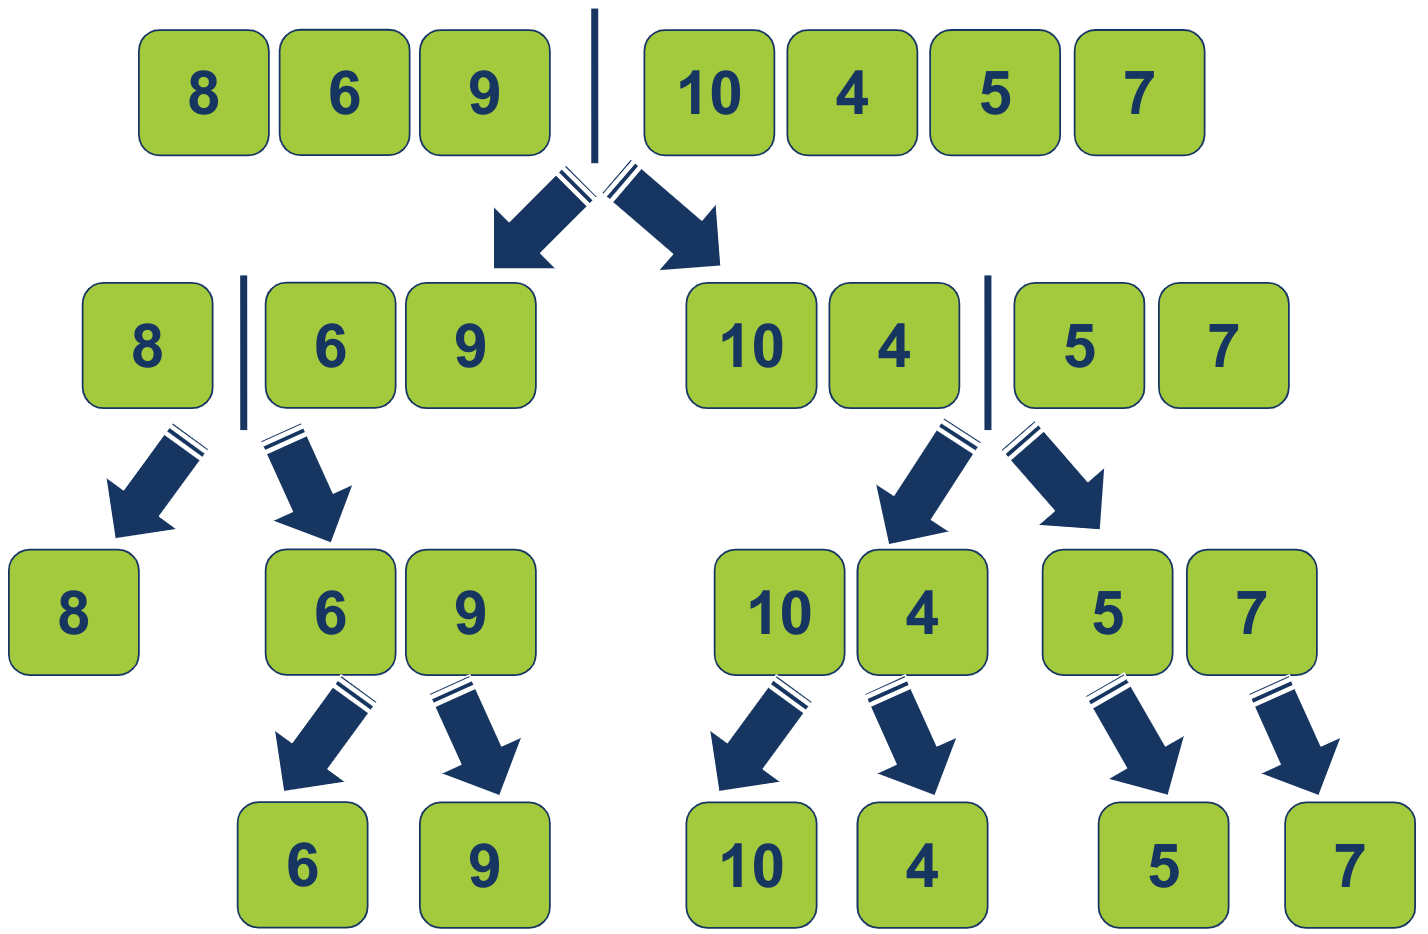 להבין את מיון מיזוג - merge sort - אלגוריתם הפרד ומשול יעיל